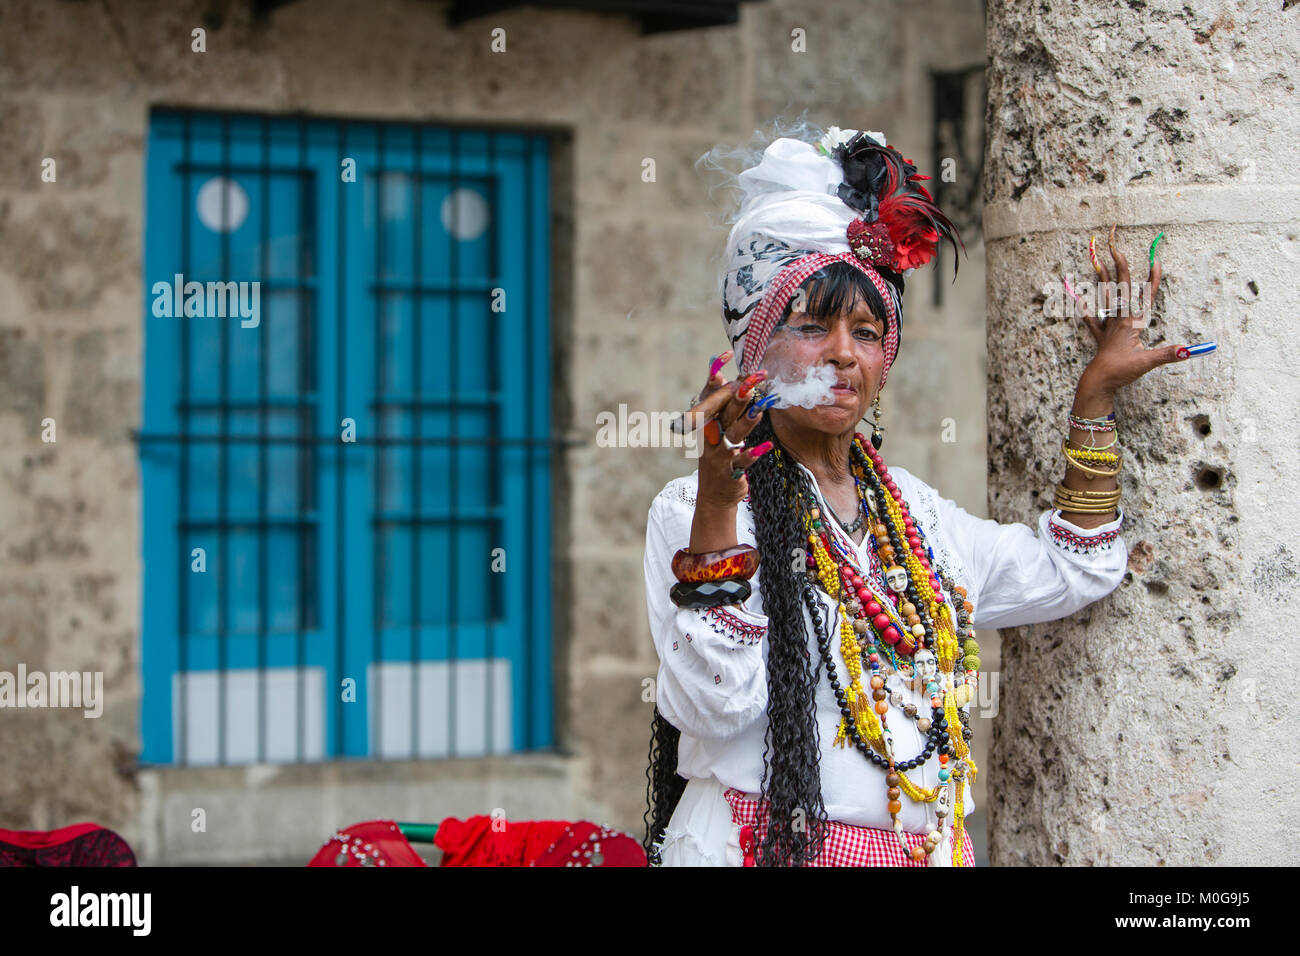 Gypsy woman in Old Havana, Cuba Stock Photo